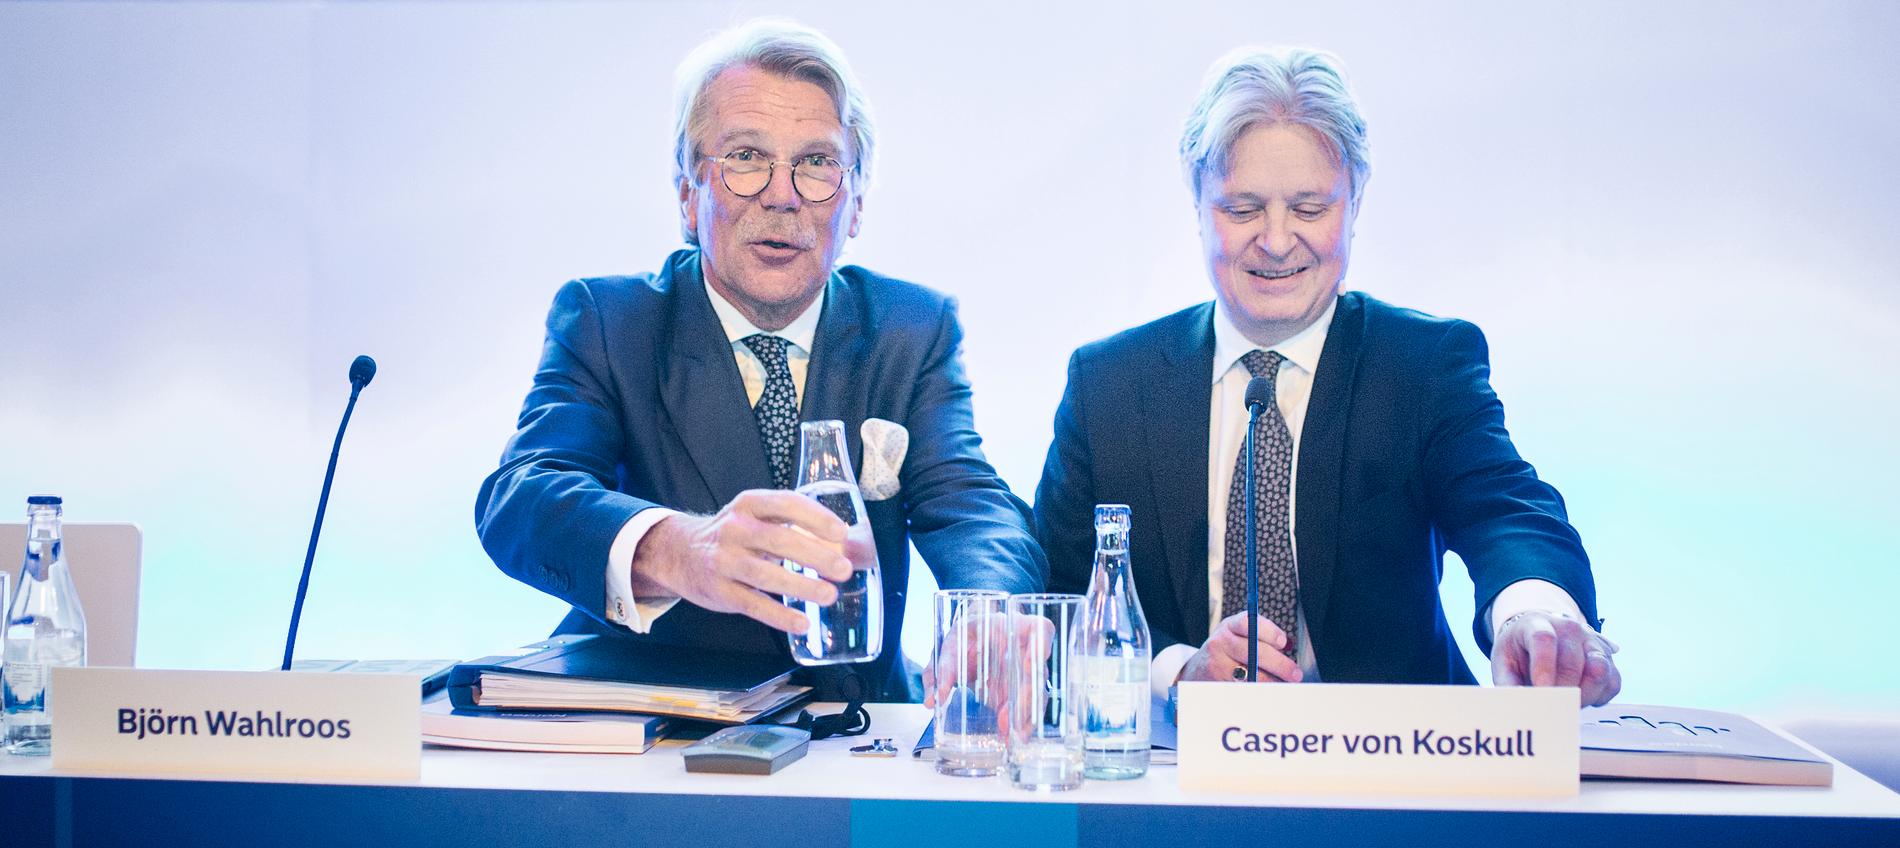 Nordeas styrelseordförande Björn Wahlroos och bankens vd Casper von Koskull har anledning att fira.